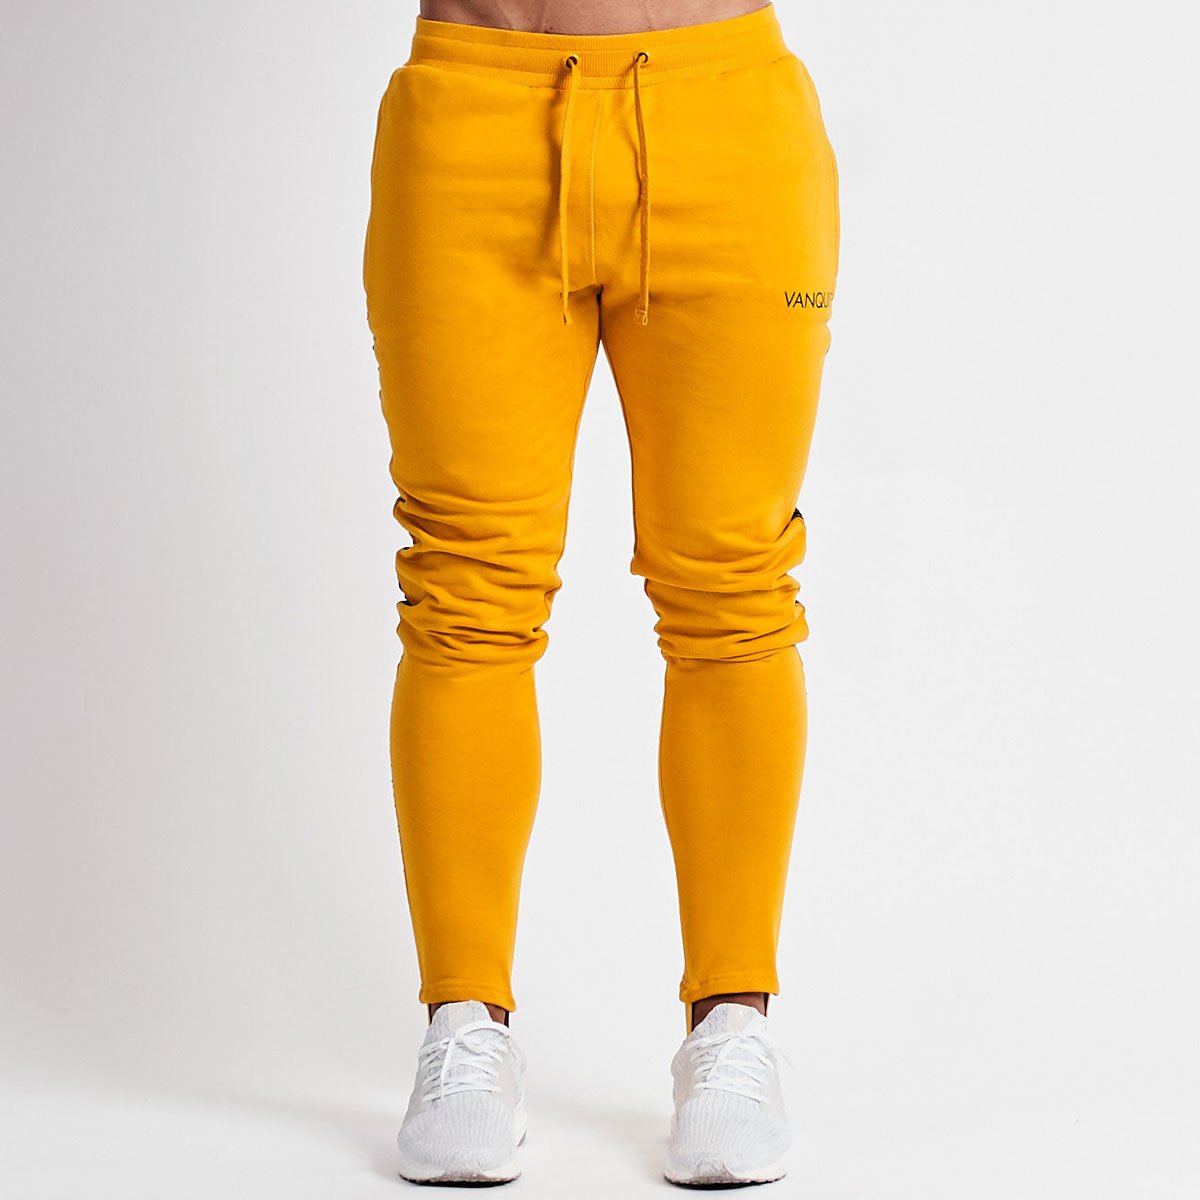 Vanquish Minimal Yellow Tapered Sweatpants